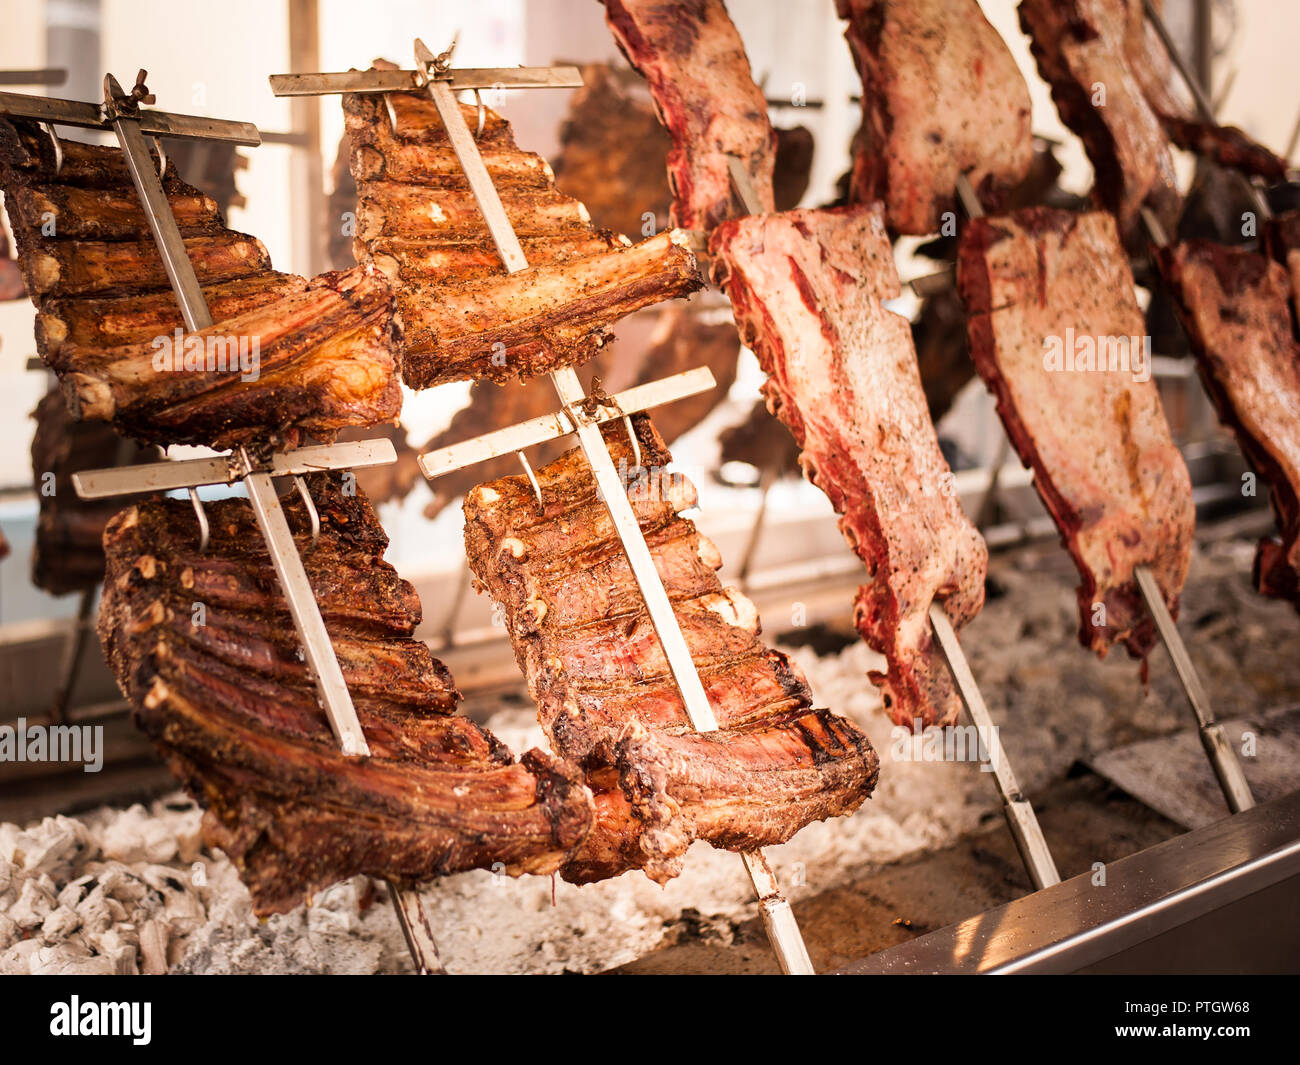 Asado, barbecue tradizionale piatto in Argentina, carne arrosto di manzo cotta su griglie verticali collocati intorno al fuoco Foto Stock